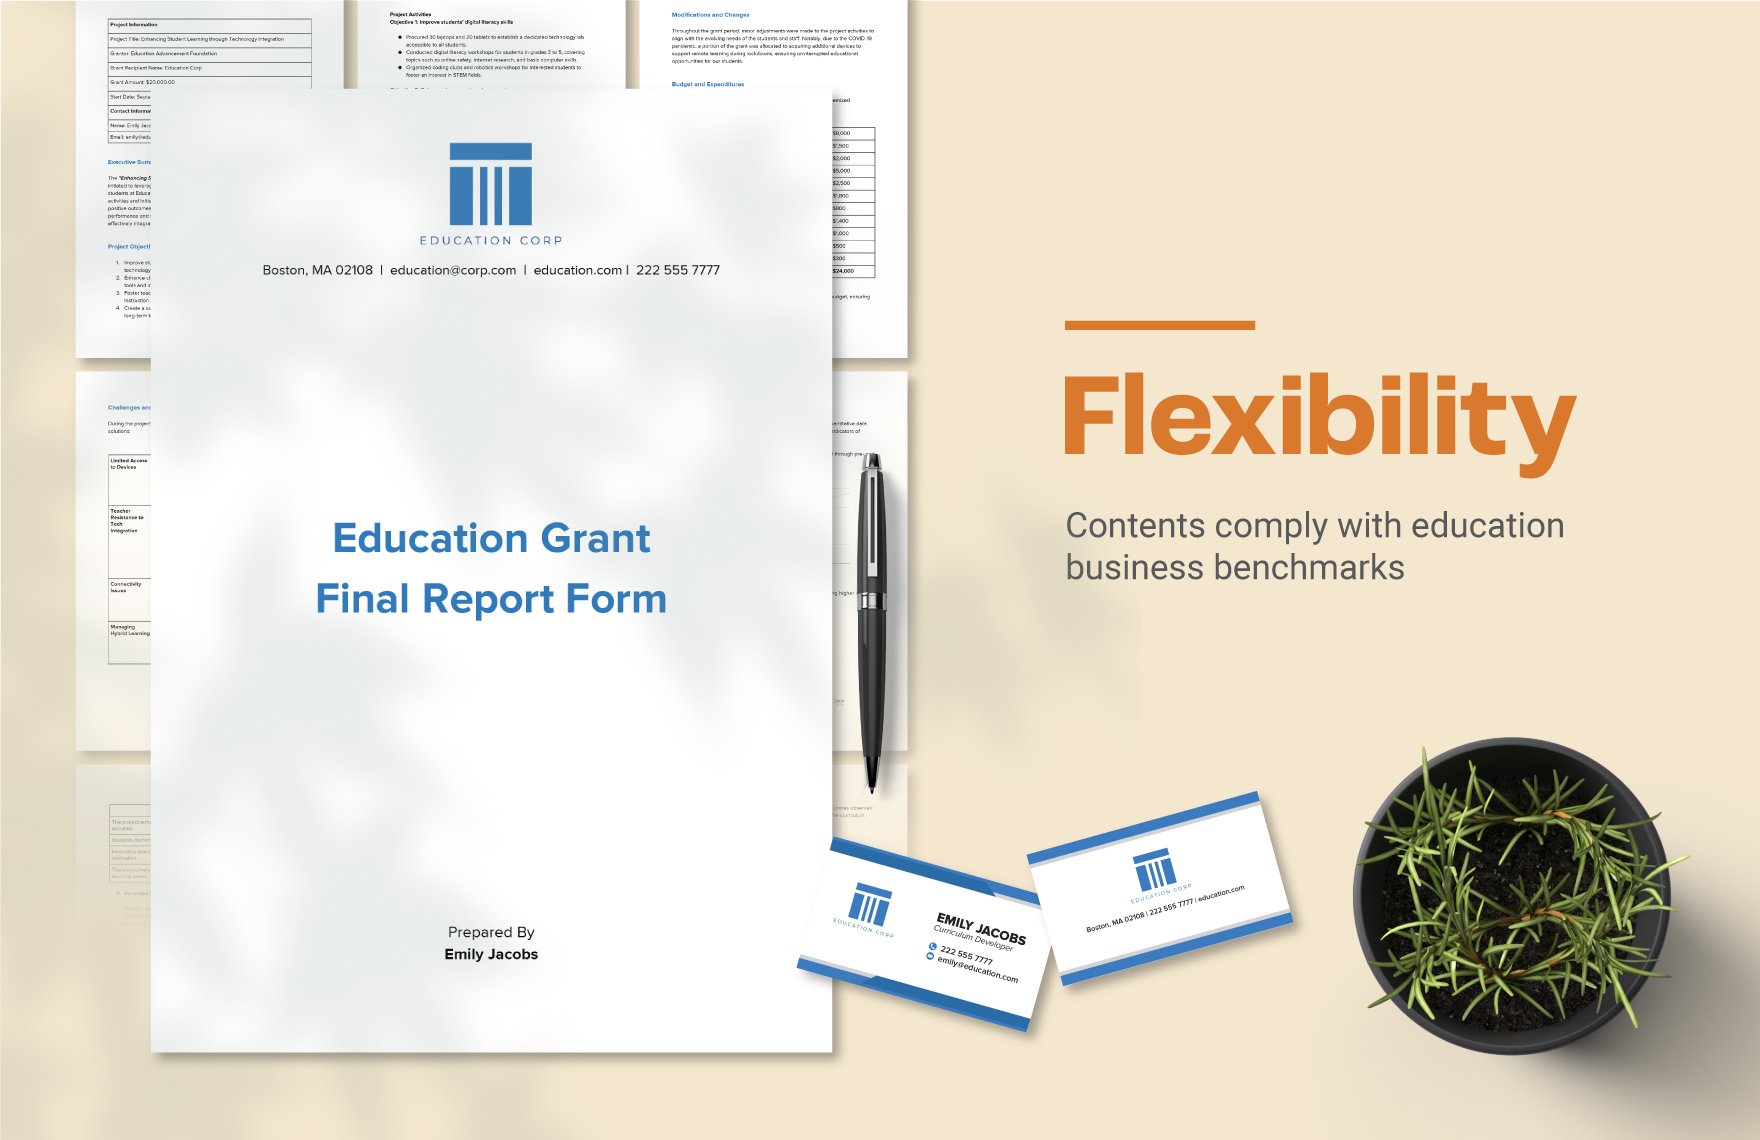  Education Grant Management Template Bundle